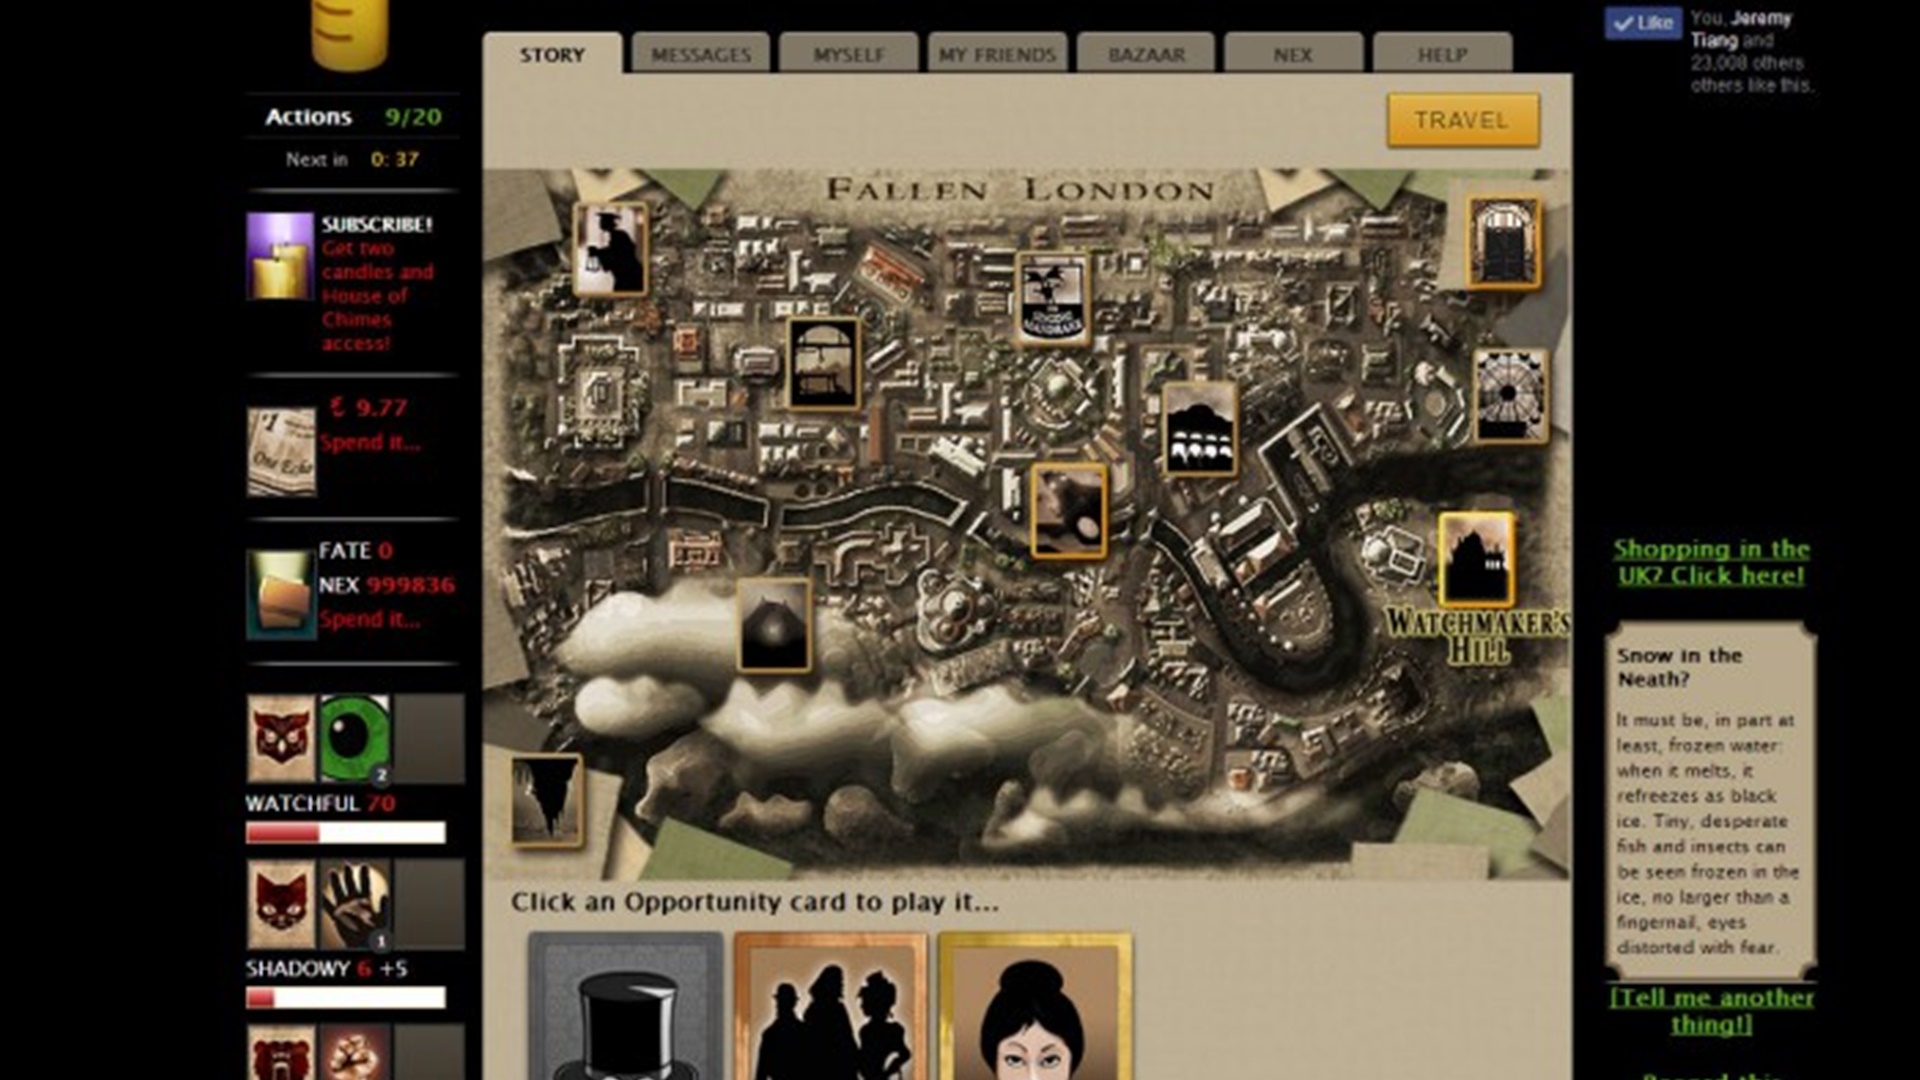 بازی های آنلاین: Fallen London. تصویر نقشه ای از لندن را با گزینه های مختلف در دسترس پخش کننده در اطراف صفحه نمایش نشان می دهد